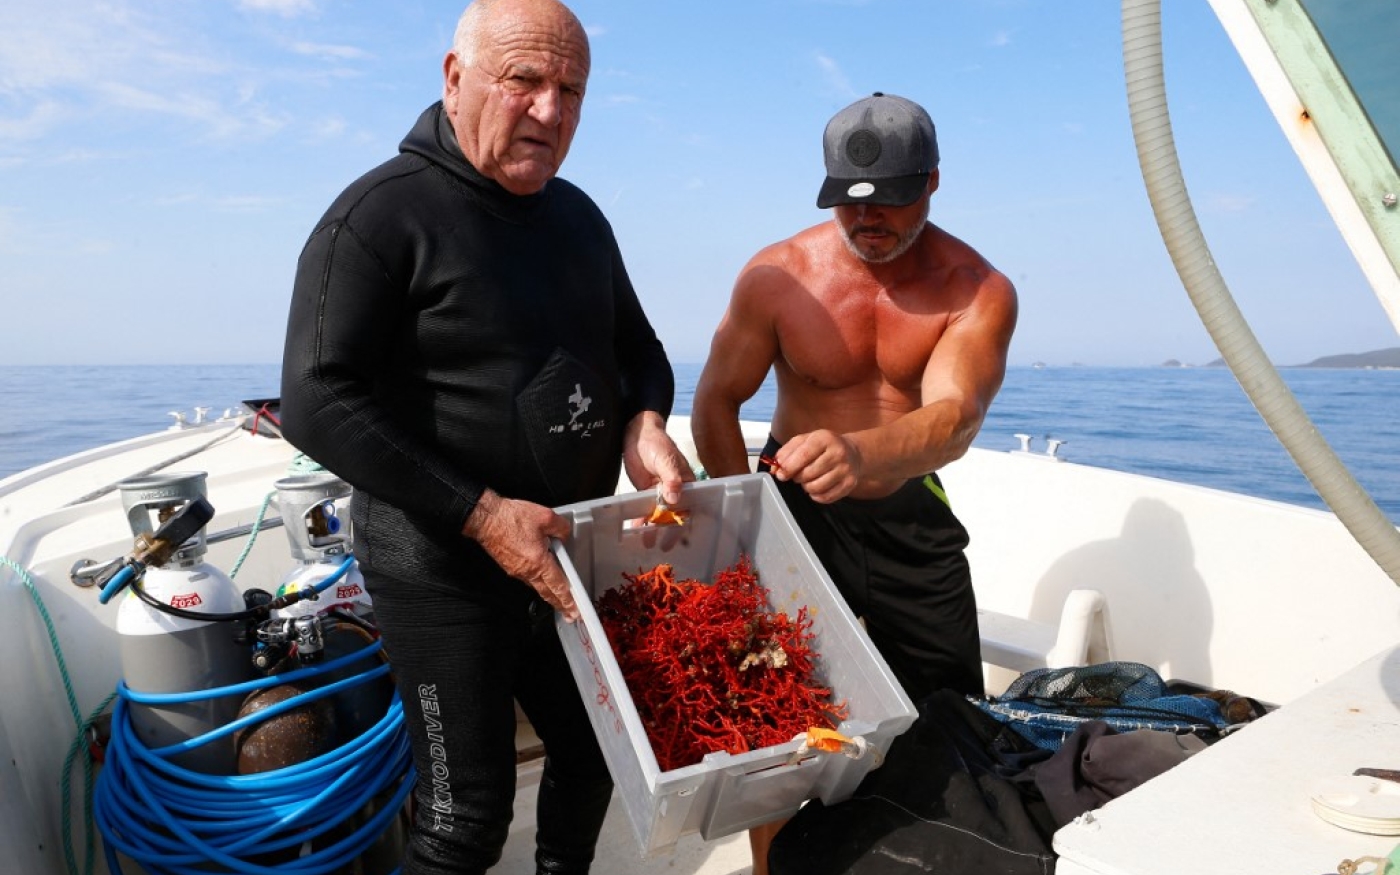 Des plongeurs montrent leurs prises de corail au large d’Ajaccio, en Corse, dans un contexte de pêche réglementée à plus de 50 mètres de profondeur pour permettre aux plongeurs amateurs d’observer les invertébrés marins (AFP/Pascal Pochard-Casabianca)